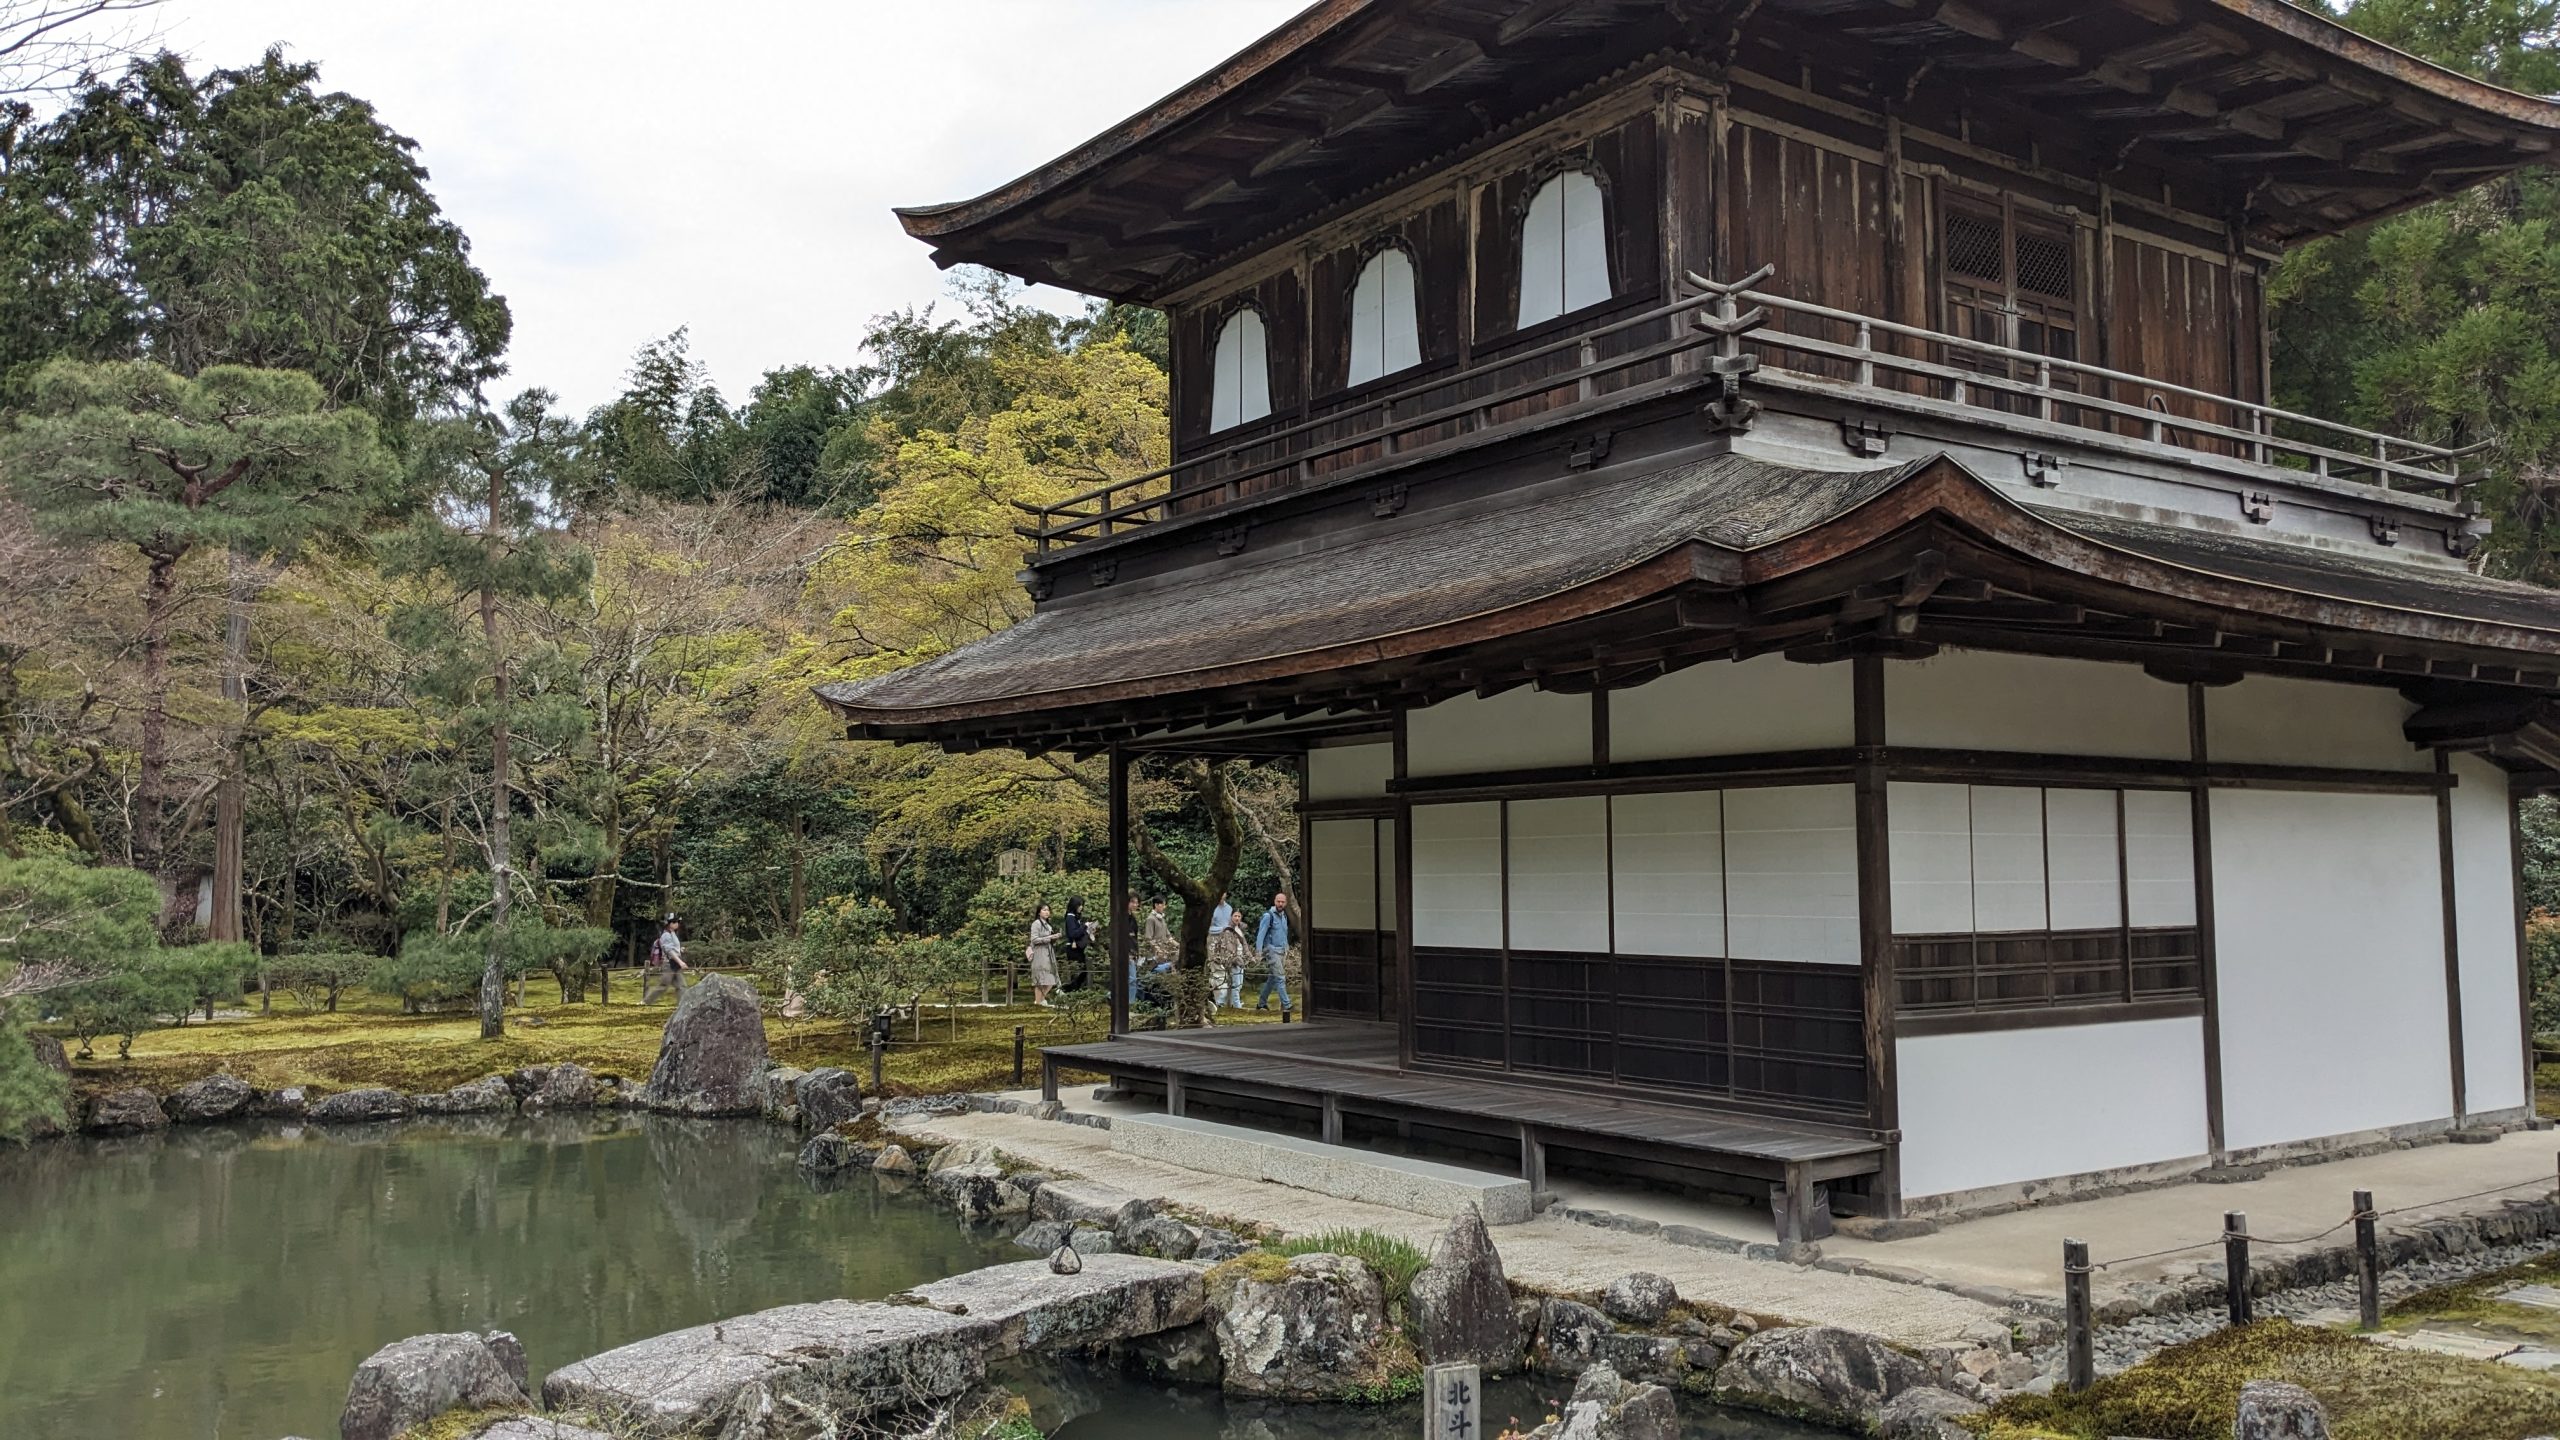 Tempio zen Ginkaku-Ji a due piani con struttura in legno scuro e pareti bianche, situato a Kyoto, Giappone, accanto a uno stagno tranquillo circondato da alberi verdi e muschio nel giardino tradizionale giapponese